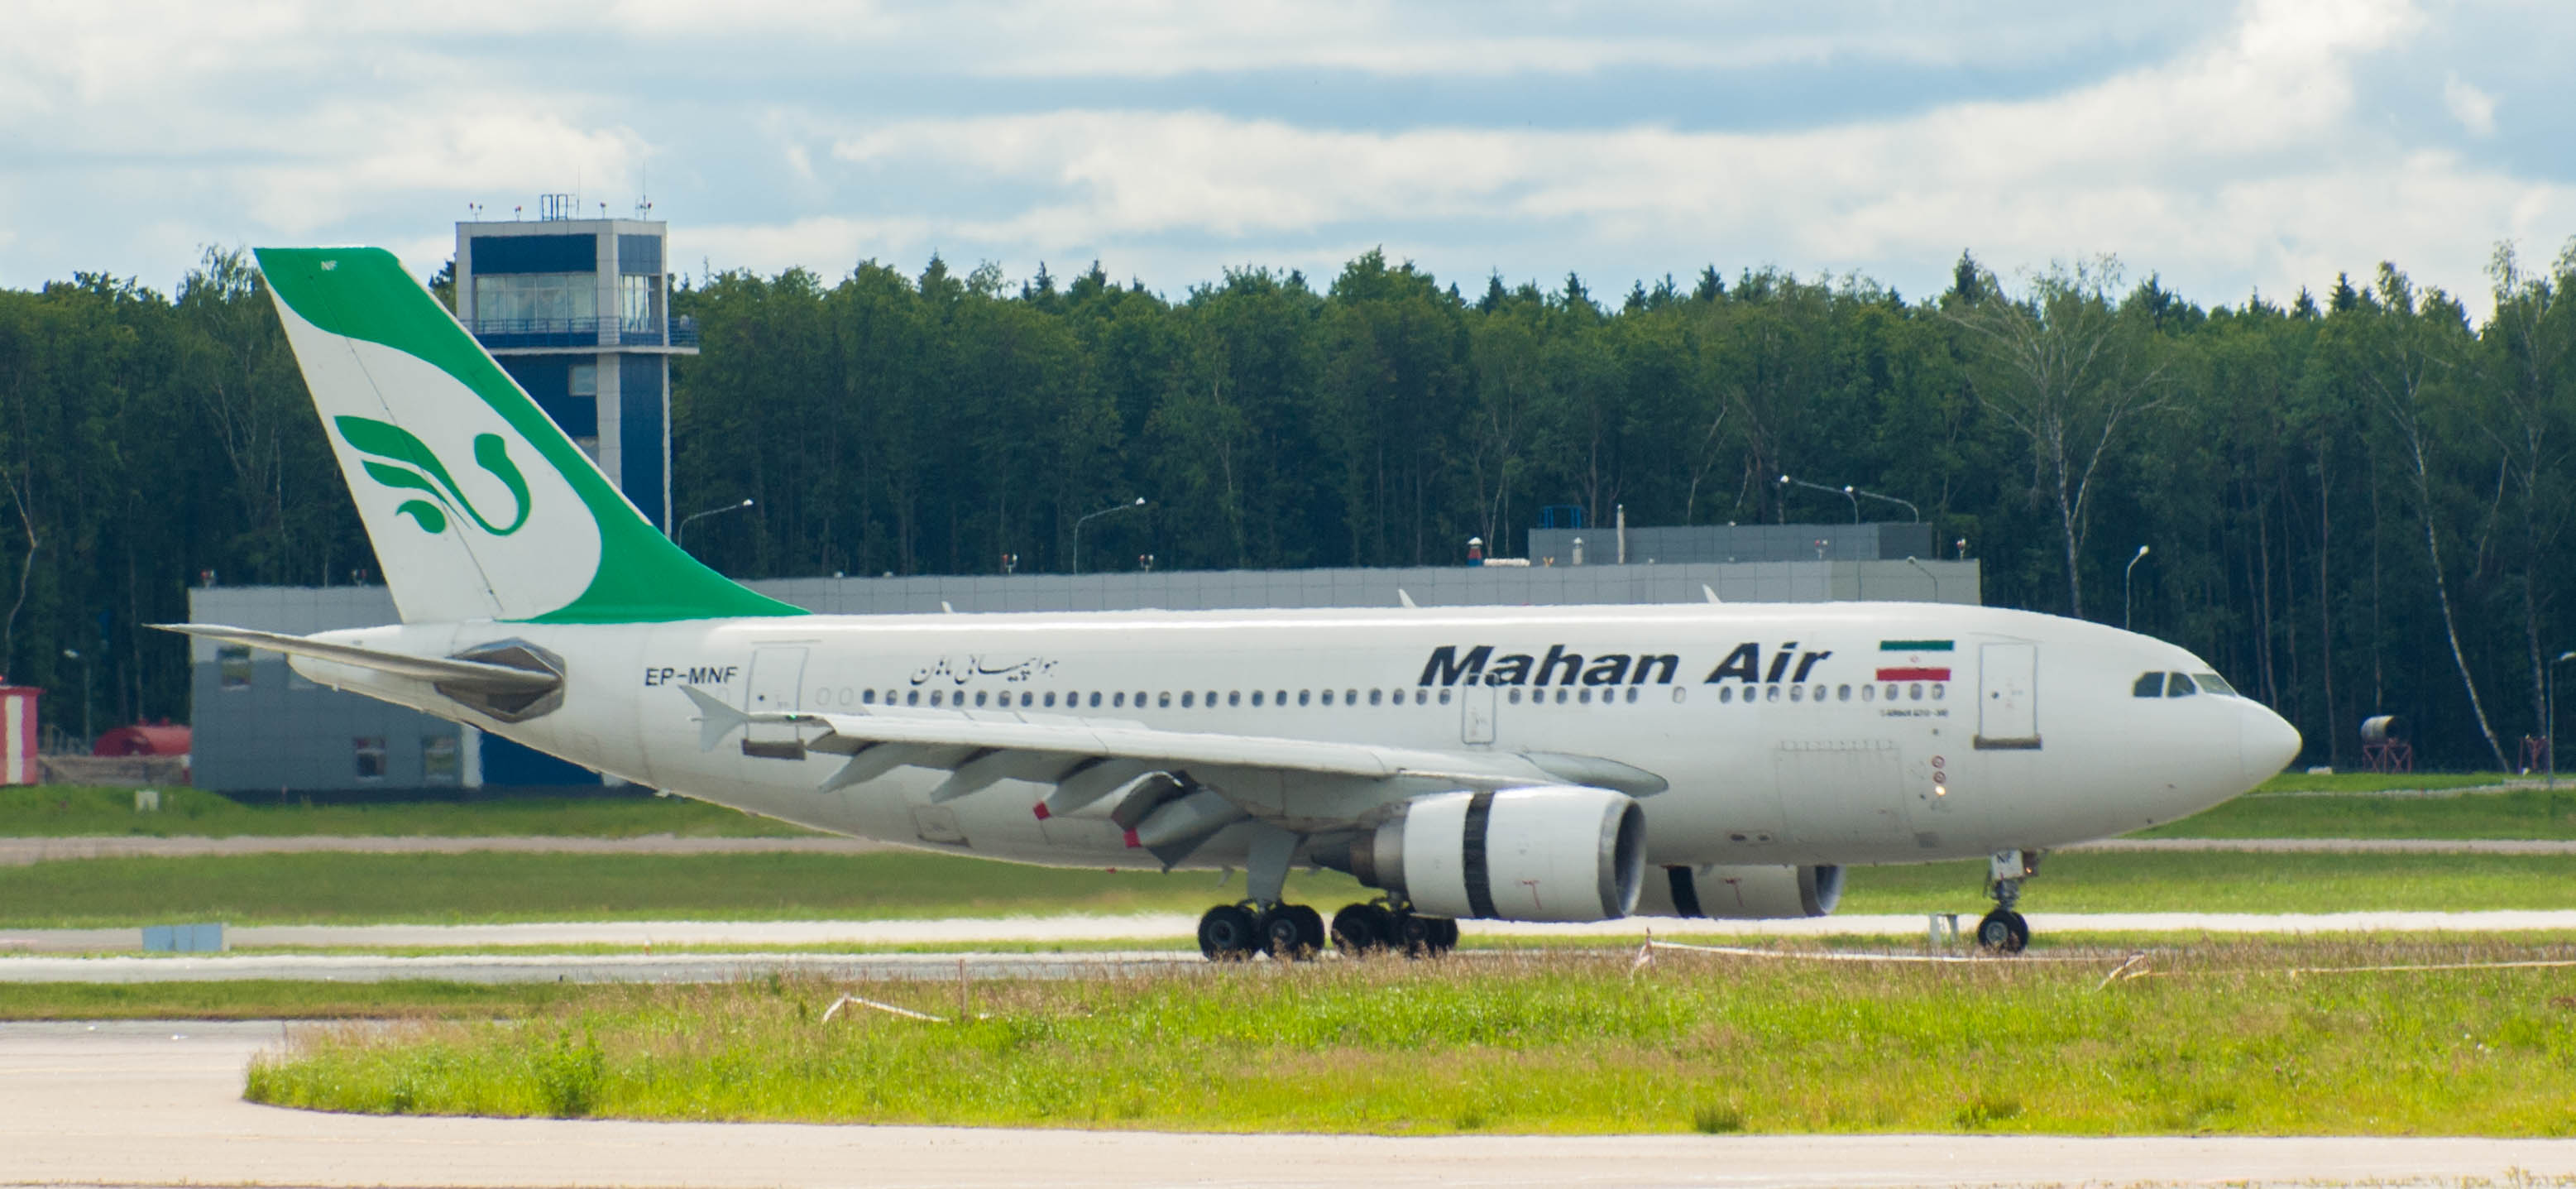 Авиакомпания Mahan Air начала выполнение нового рейса в аэропорт Внуково из Иранского города Мешхед | Международный аэропорт Внуково